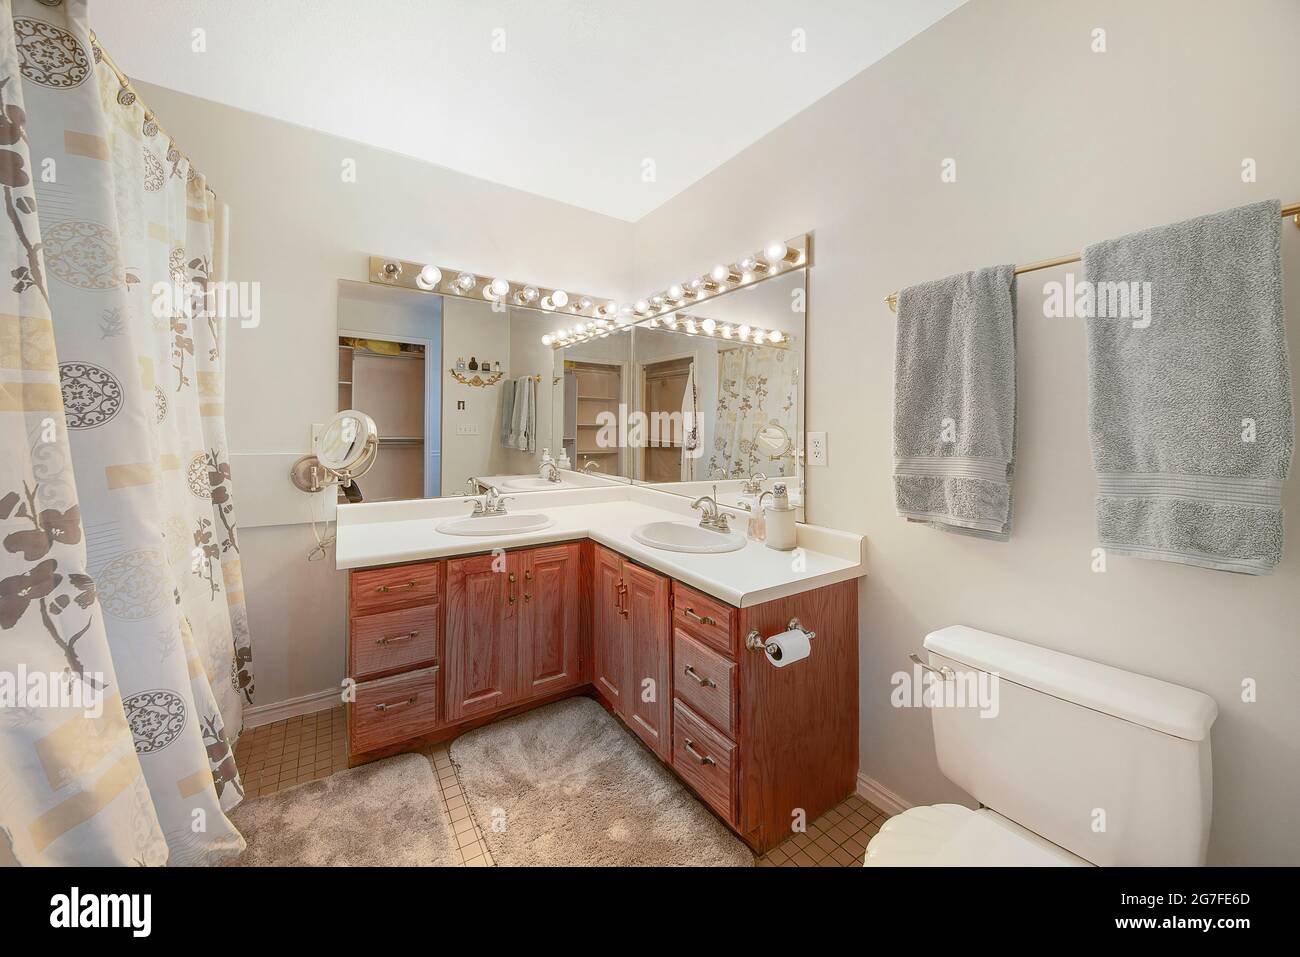 Badezimmer mit doppeltem Waschbecken in L-Form Stockfotografie - Alamy